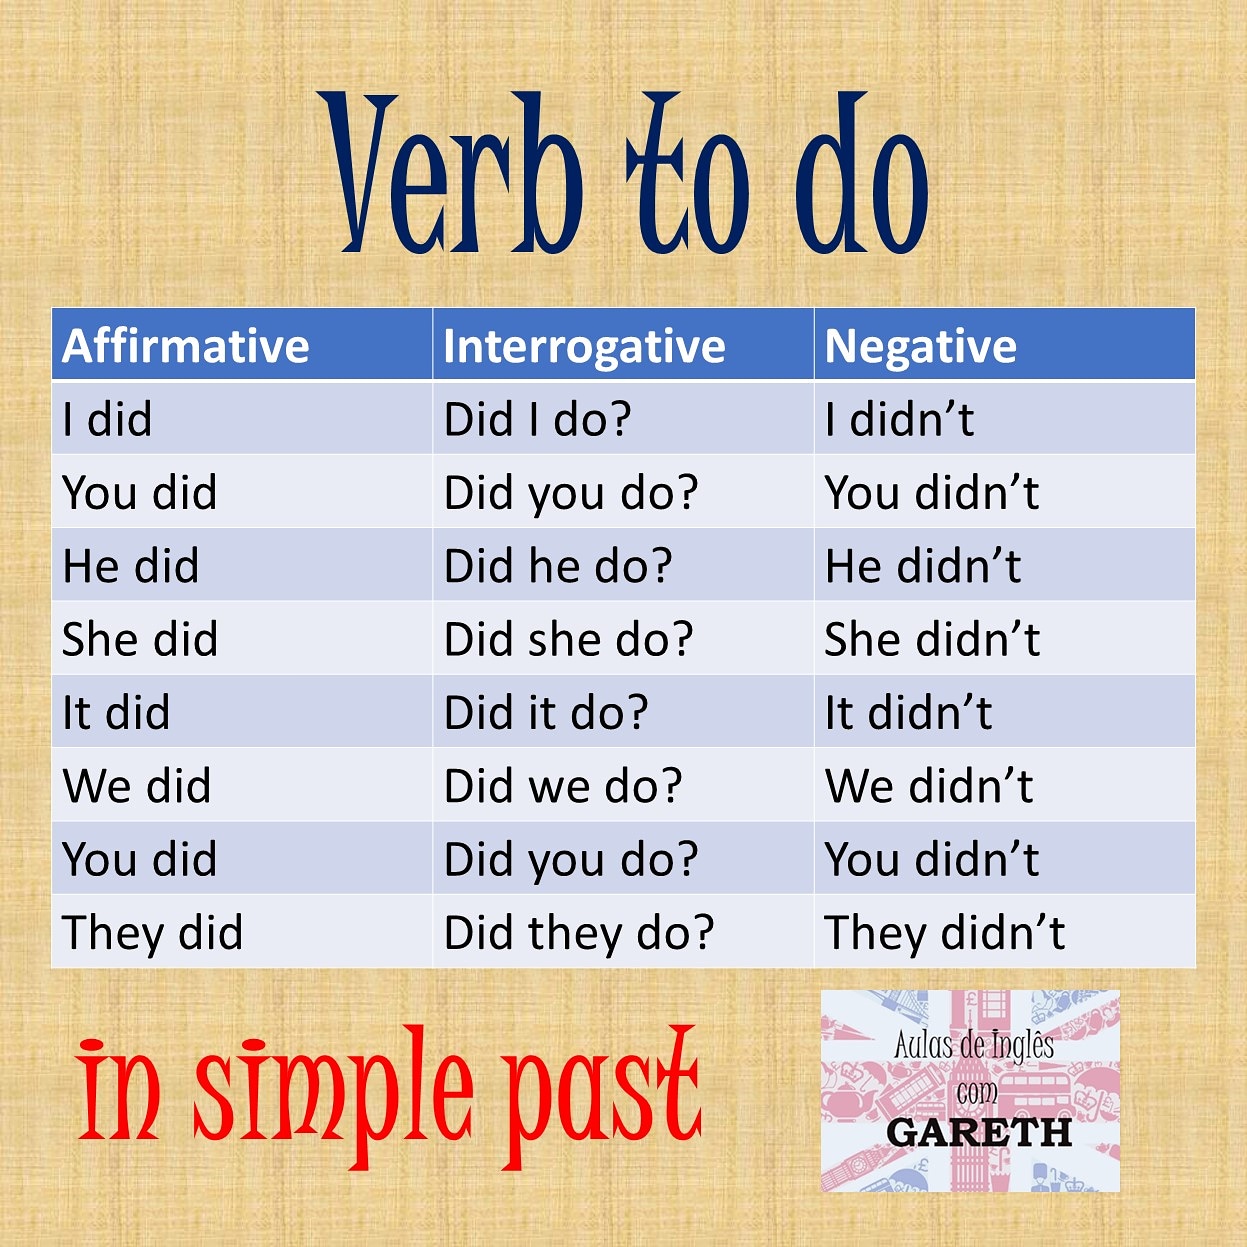 Inglês com Gareth on X: #verbtodo #verbofazer #do #fazer #verb